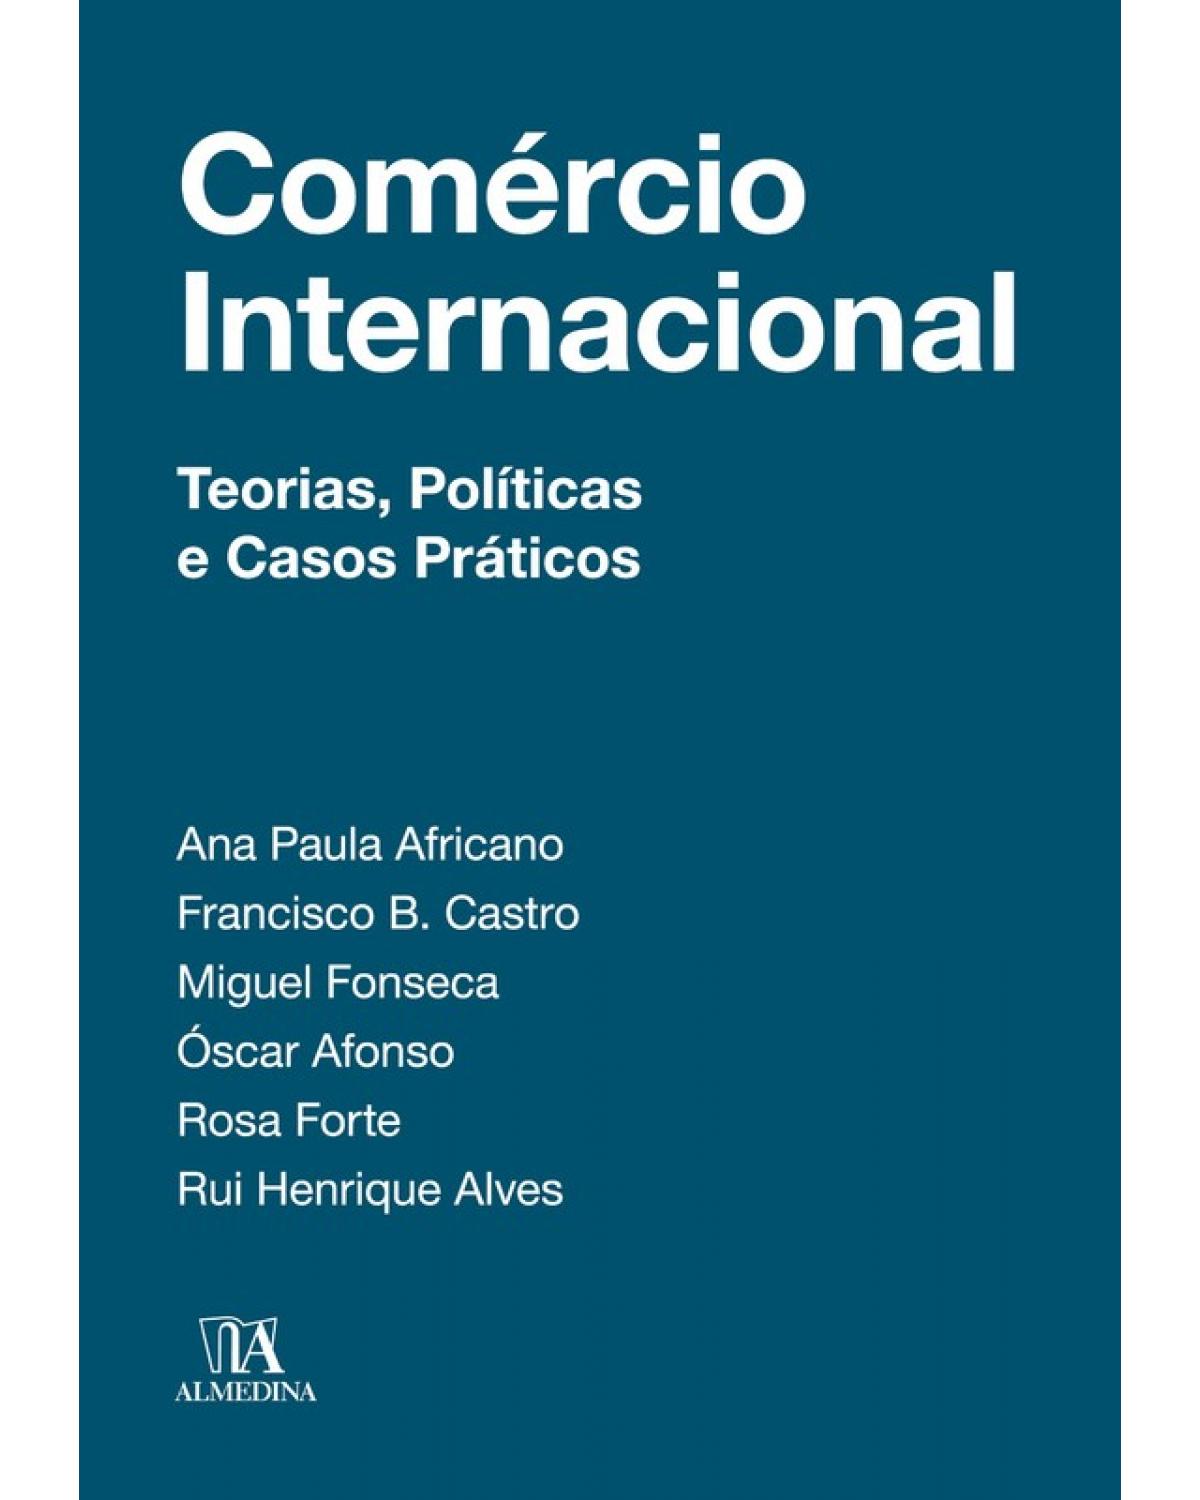 Comércio internacional - teorias, políticas e casos práticos - 1ª Edição | 2018